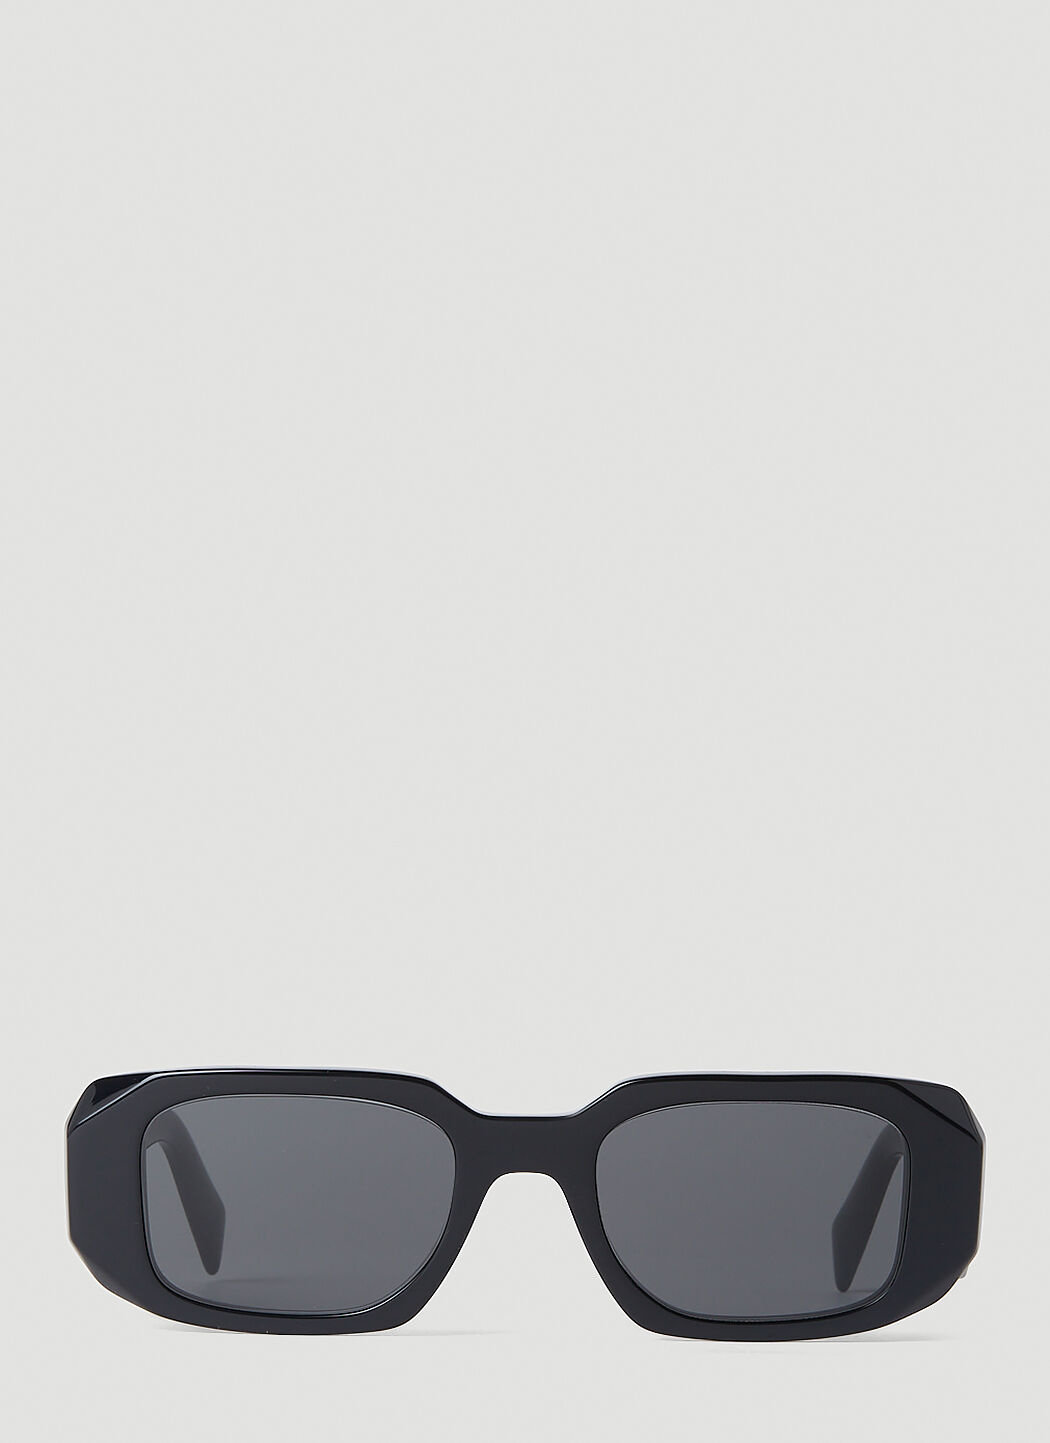 Prada - Prada Symbole - Geometric Sunglasses - Sage Green Black Slate Gray  - Prada Collection - Sunglasses - Avvenice